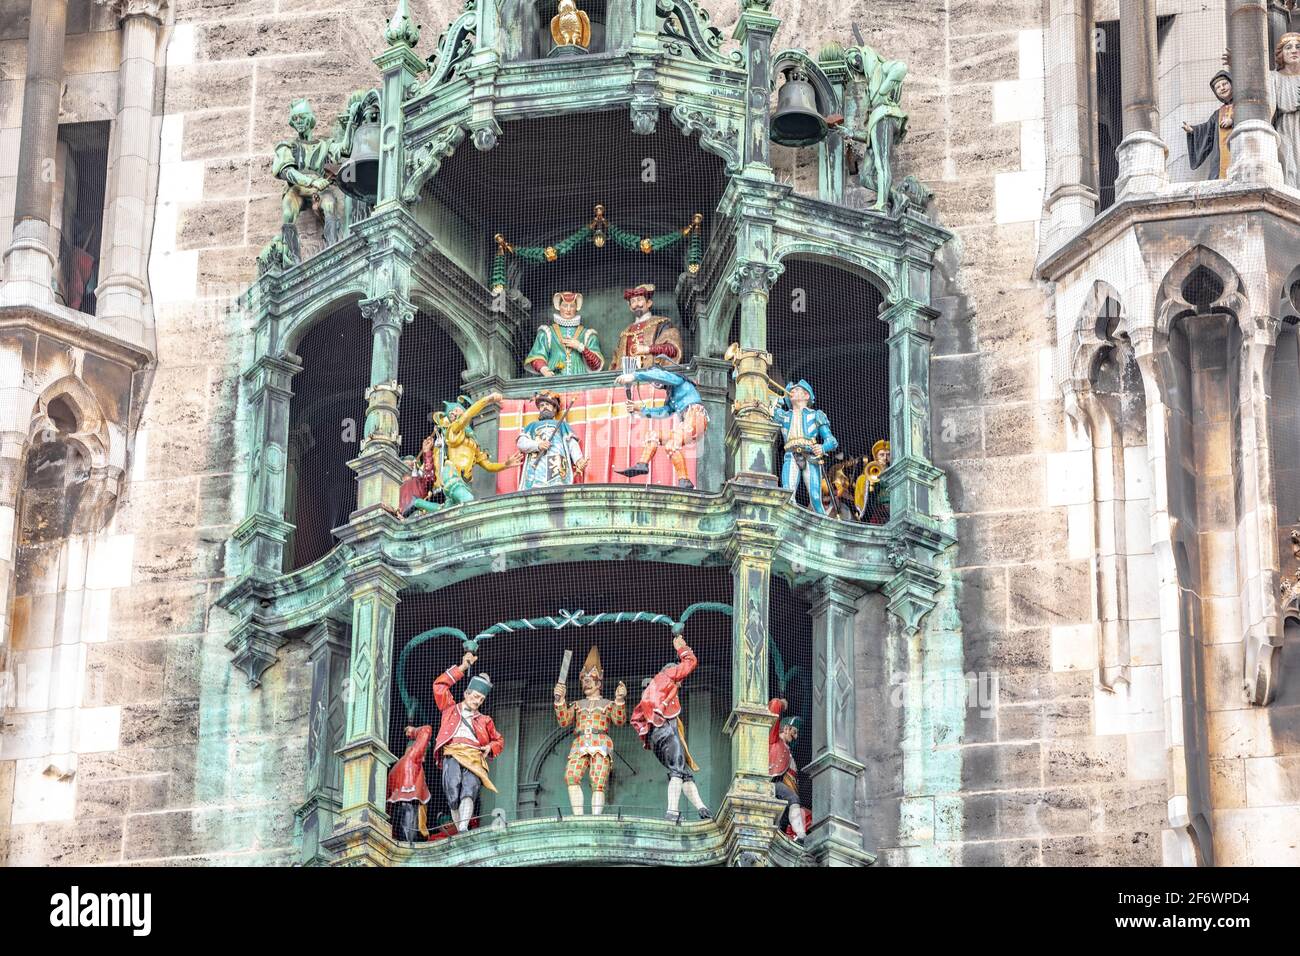 Neues Rathaus, il nuovo municipio è un municipio neogotico con una torre svettante per le viste della città e famoso glockenspiel che suona ogni giorno. Foto Stock